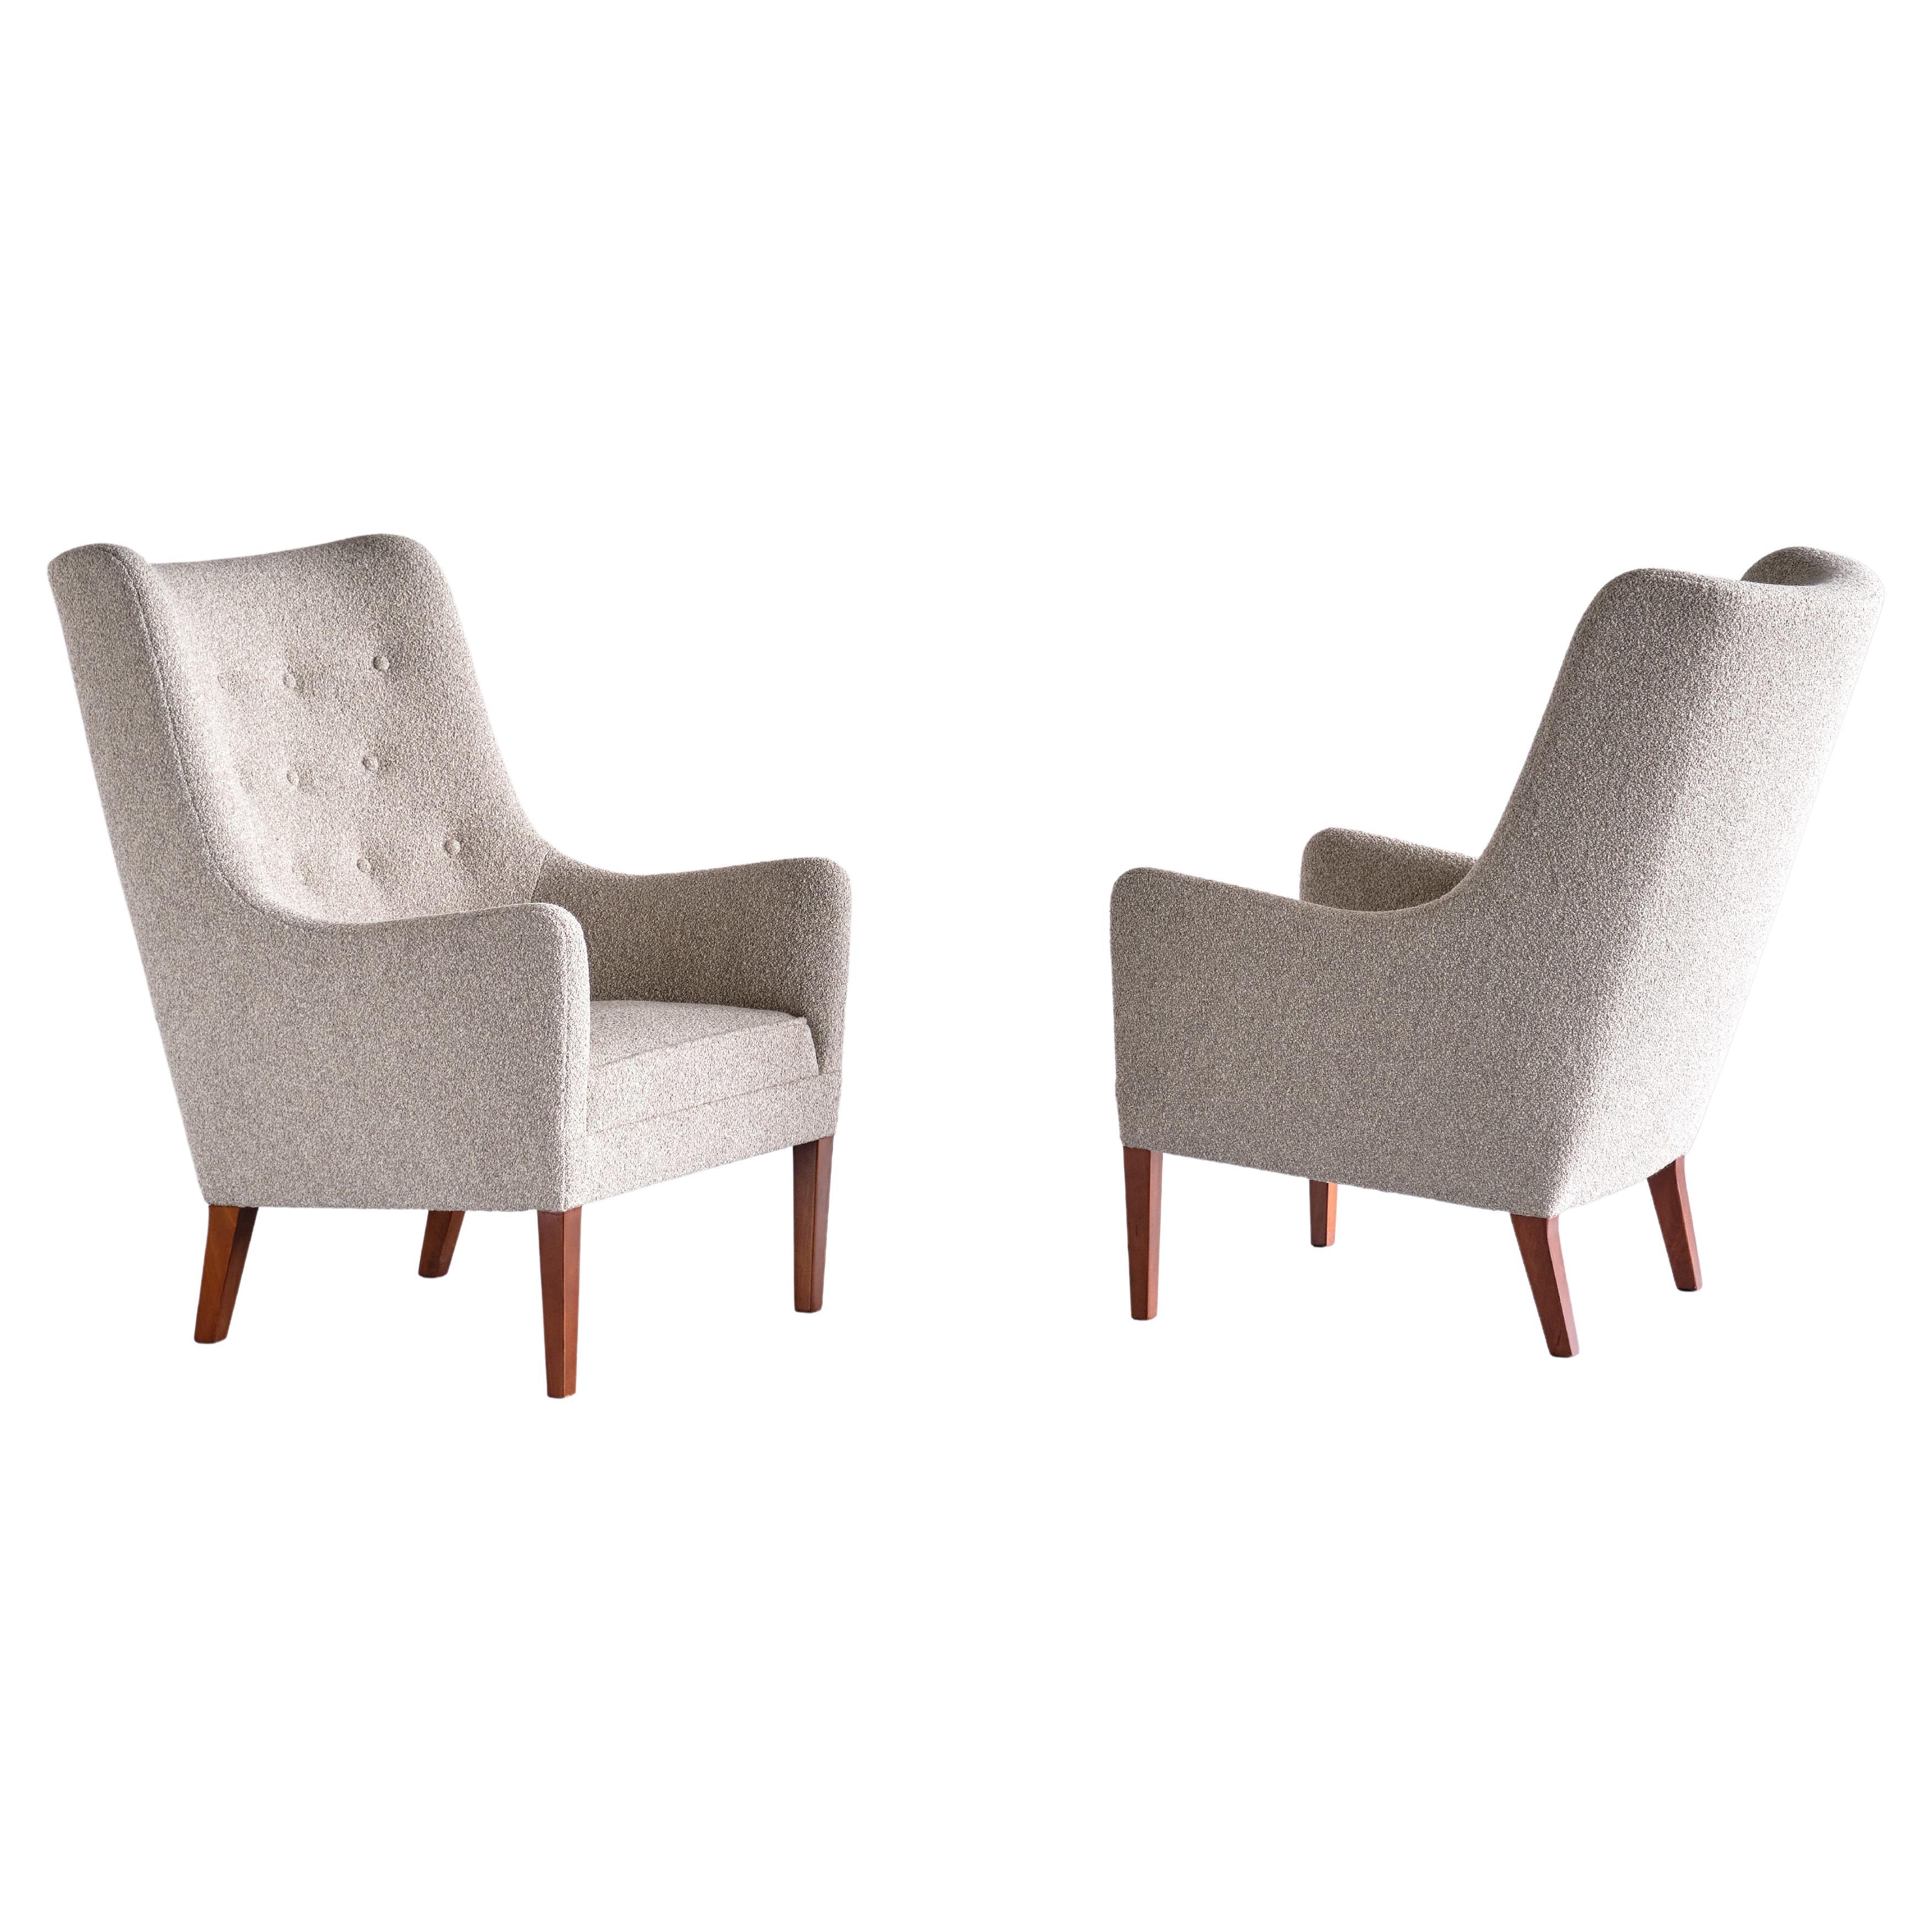 Cette paire de fauteuils très rare a été conçue et produite par Jacob Kjær au Danemark à la fin des années 1940. Le design somptueux est marqué par la combinaison distincte de lignes courbes et droites du siège. Le dossier haut et boutonné et la